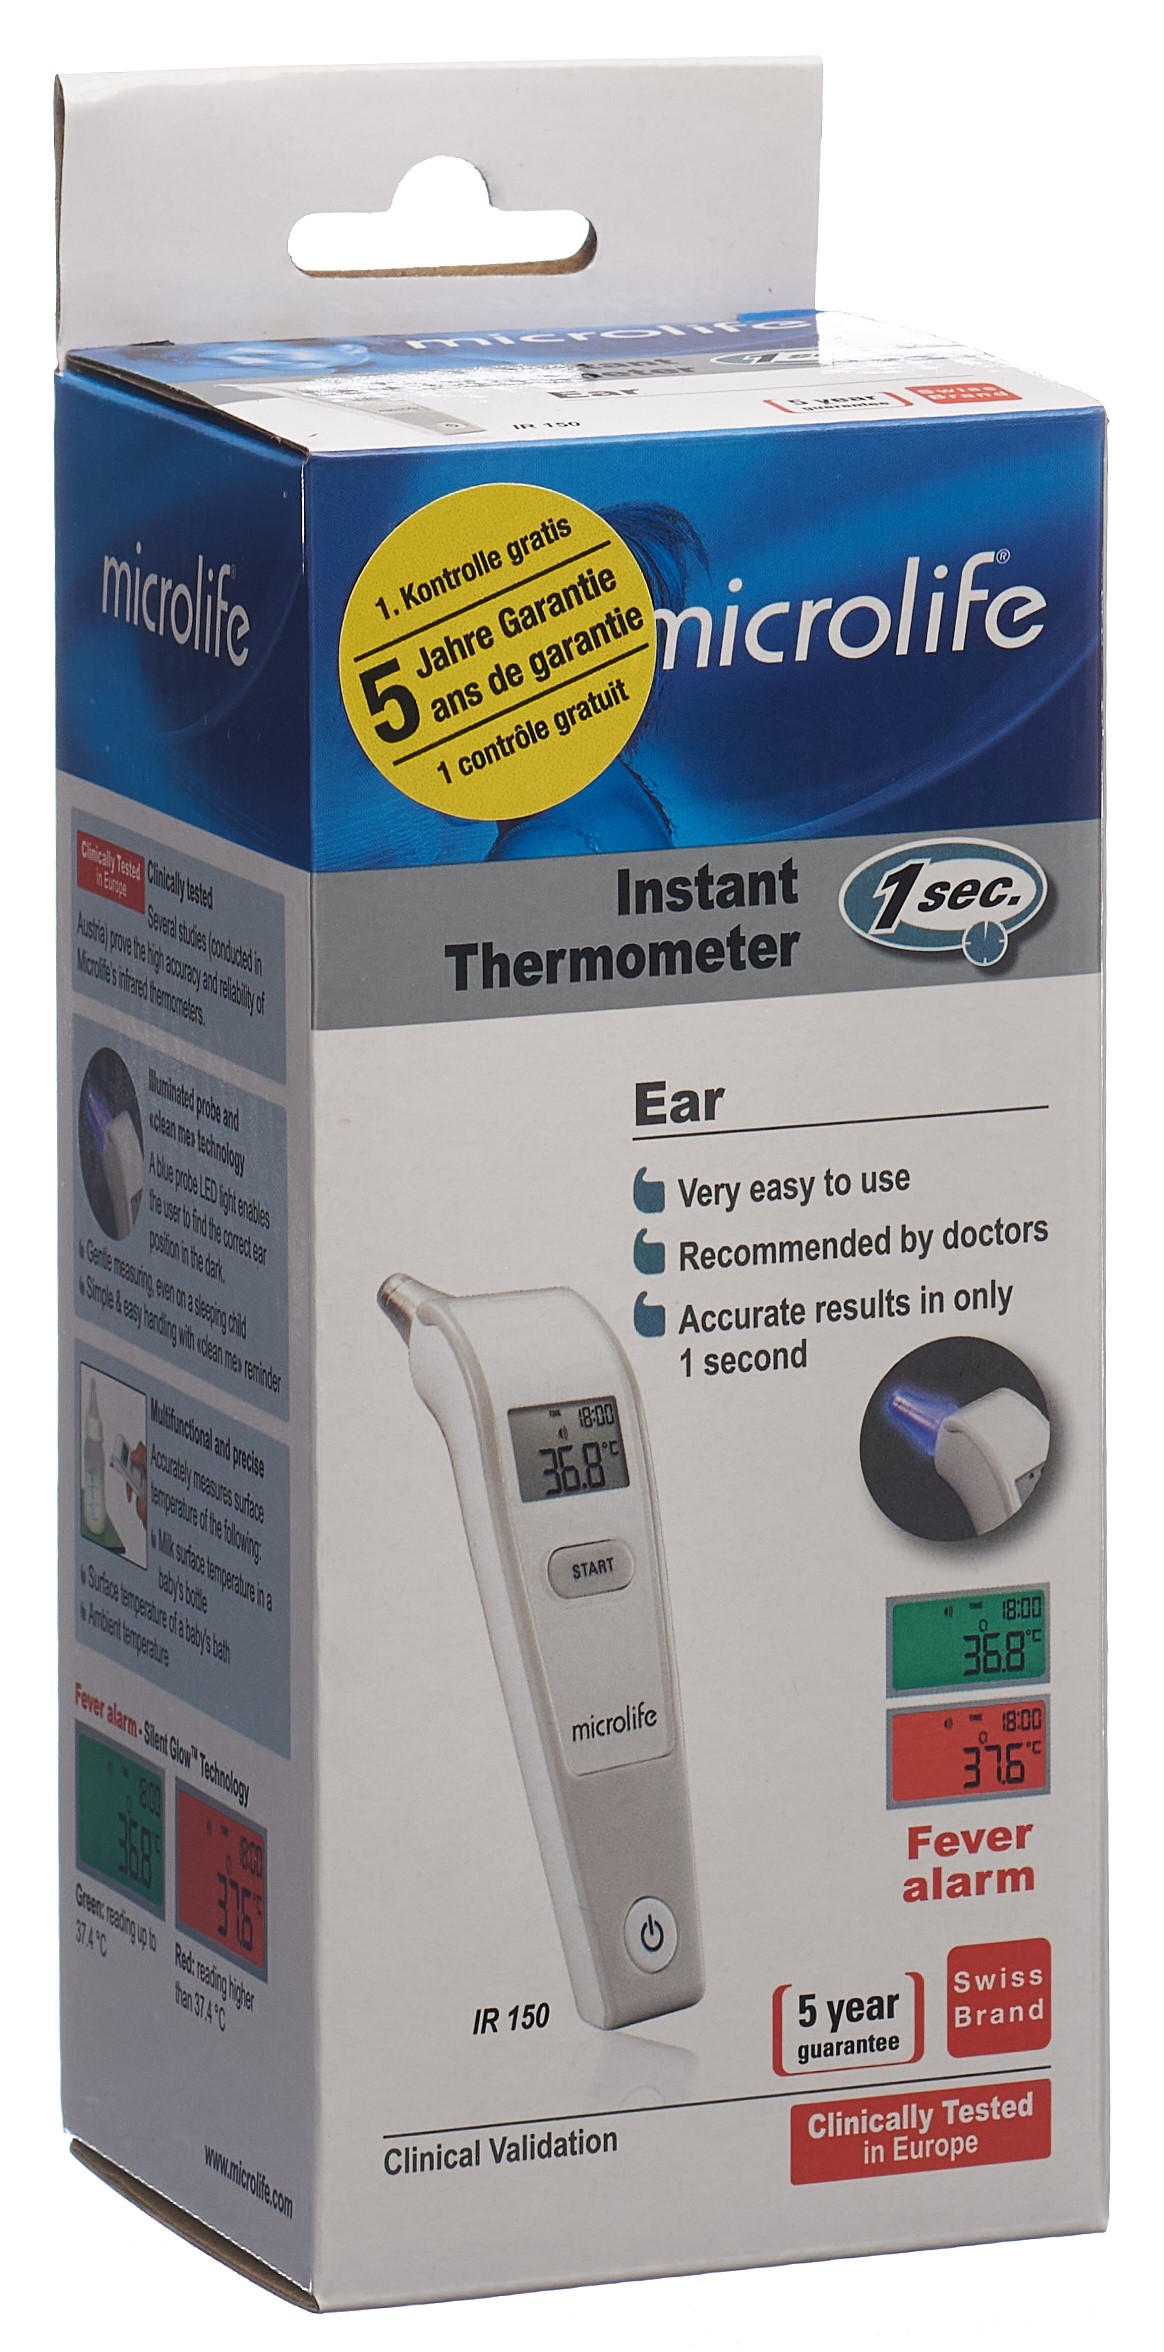 Fieberthermometer - Dr. Noyer Apotheken - Online Shop